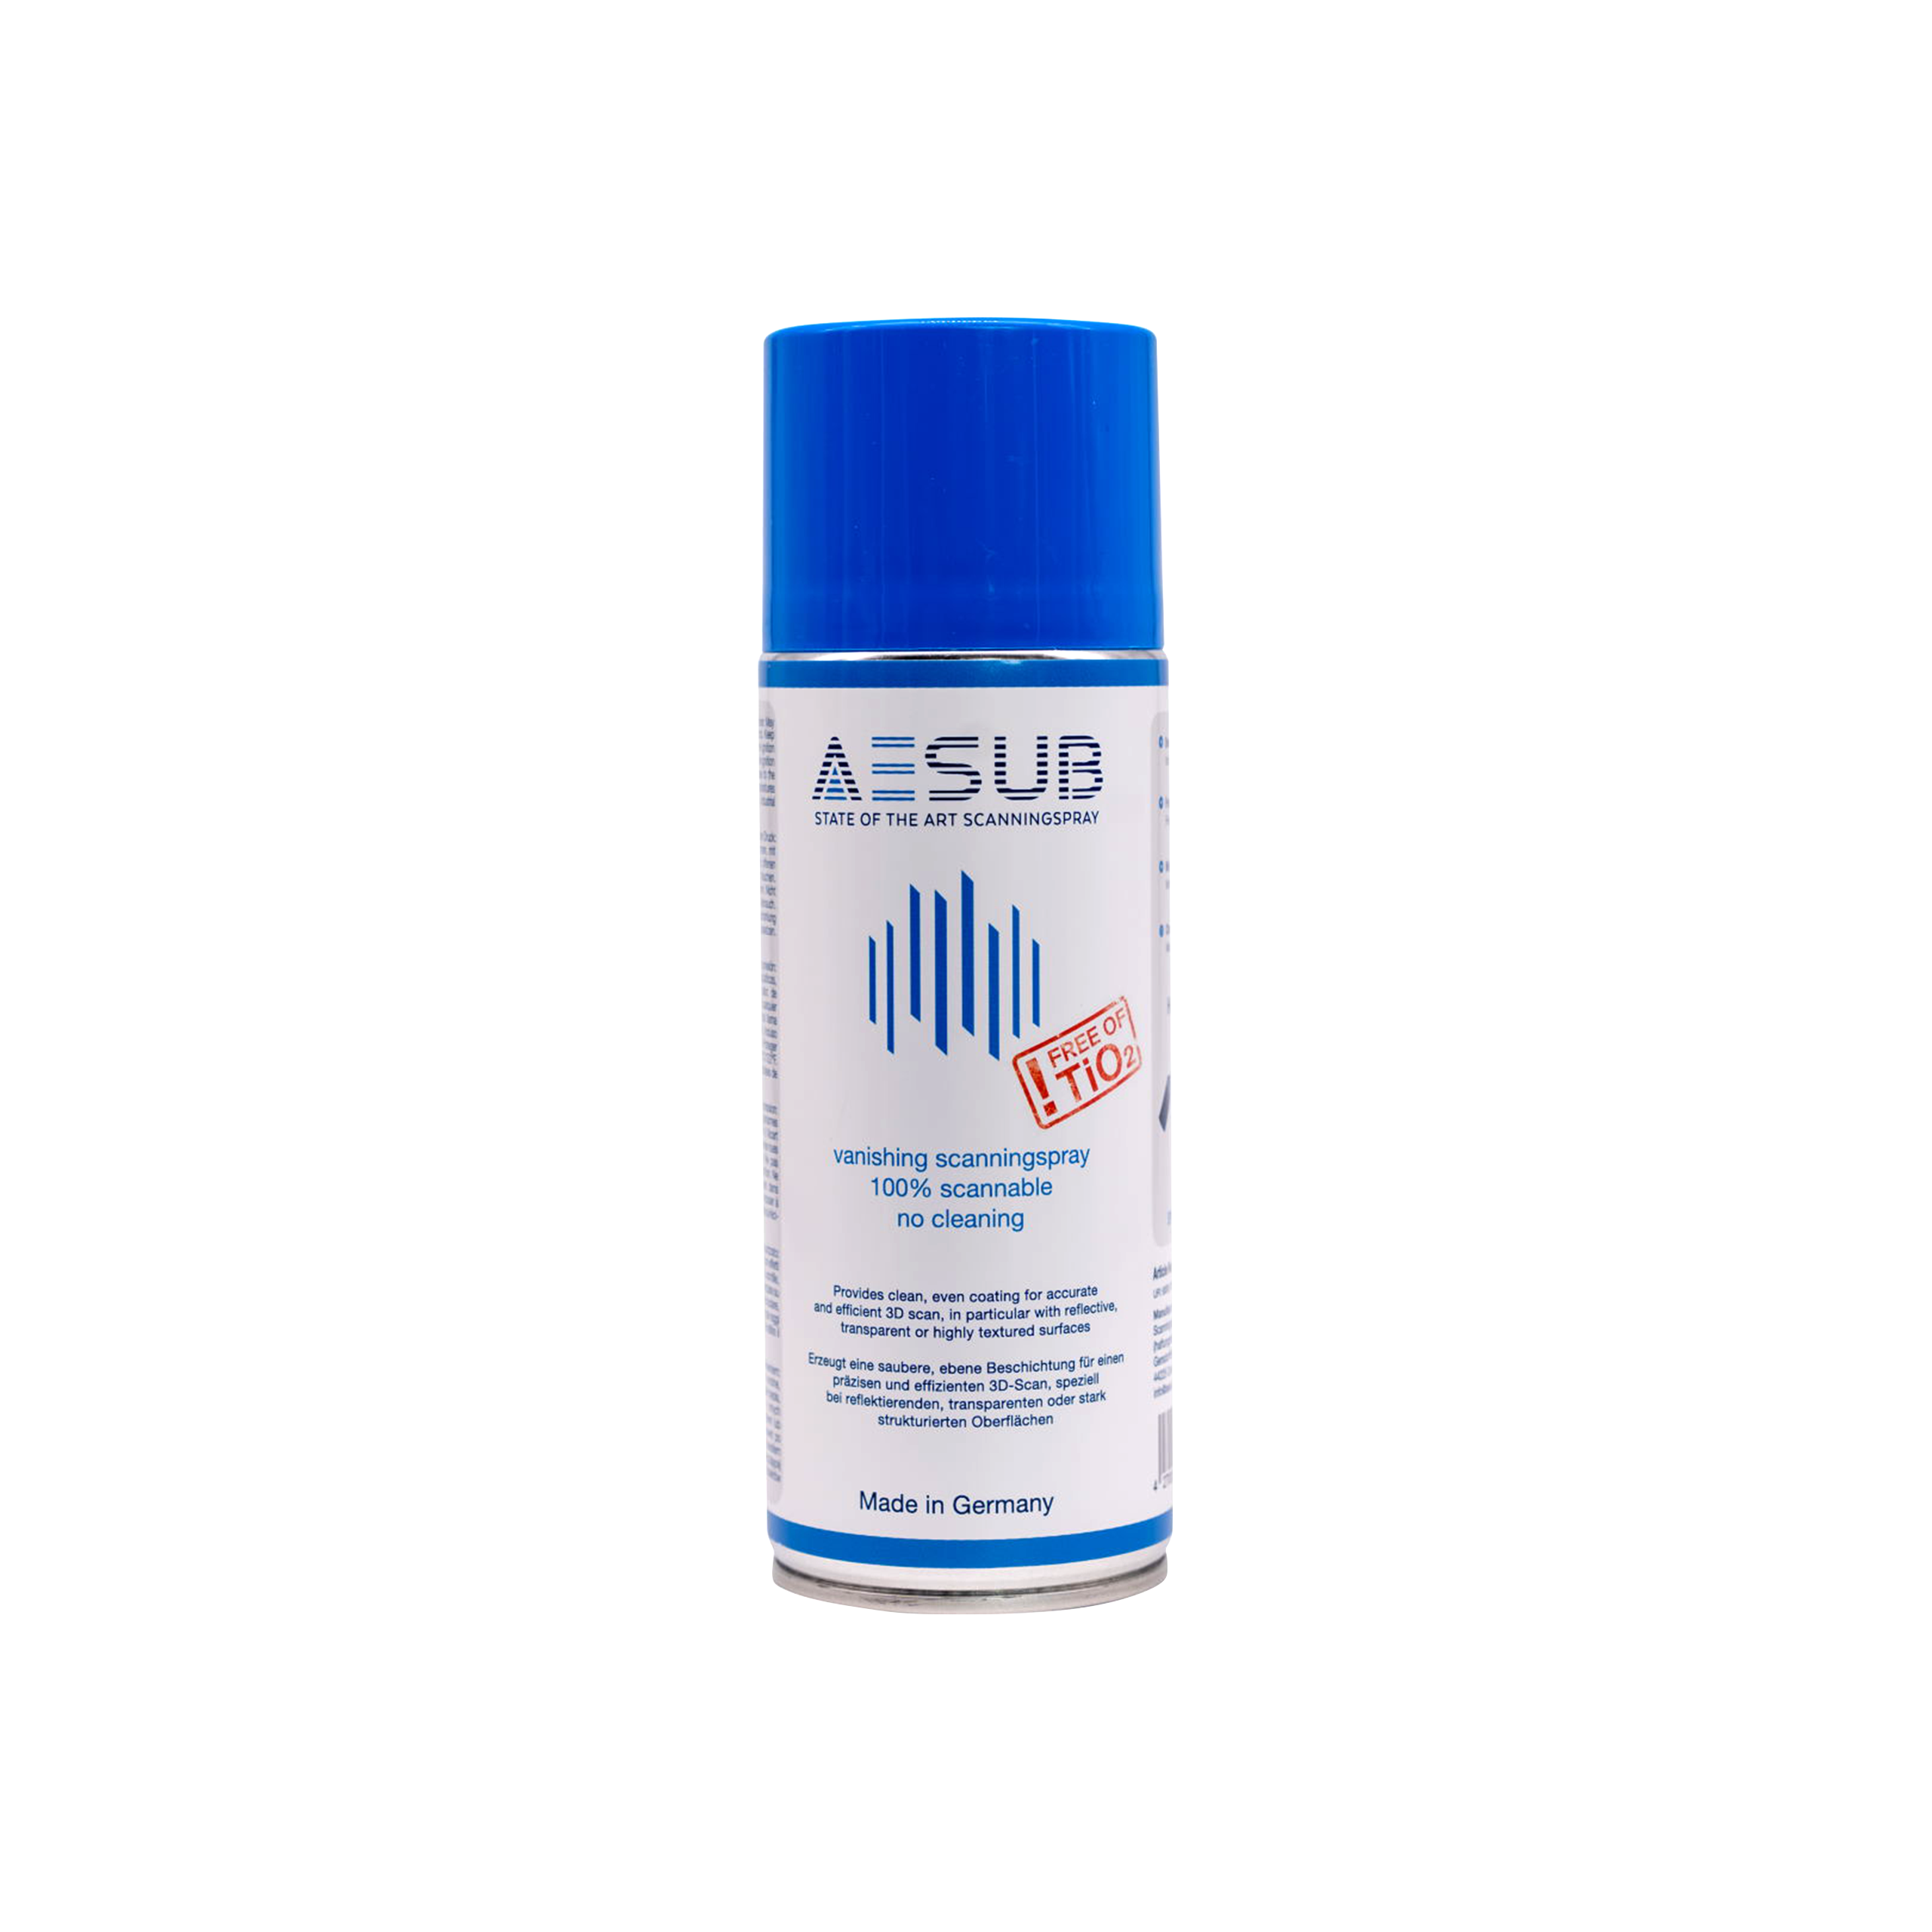 AESUB Vaporisateur à Scanner Bleu 400 ml